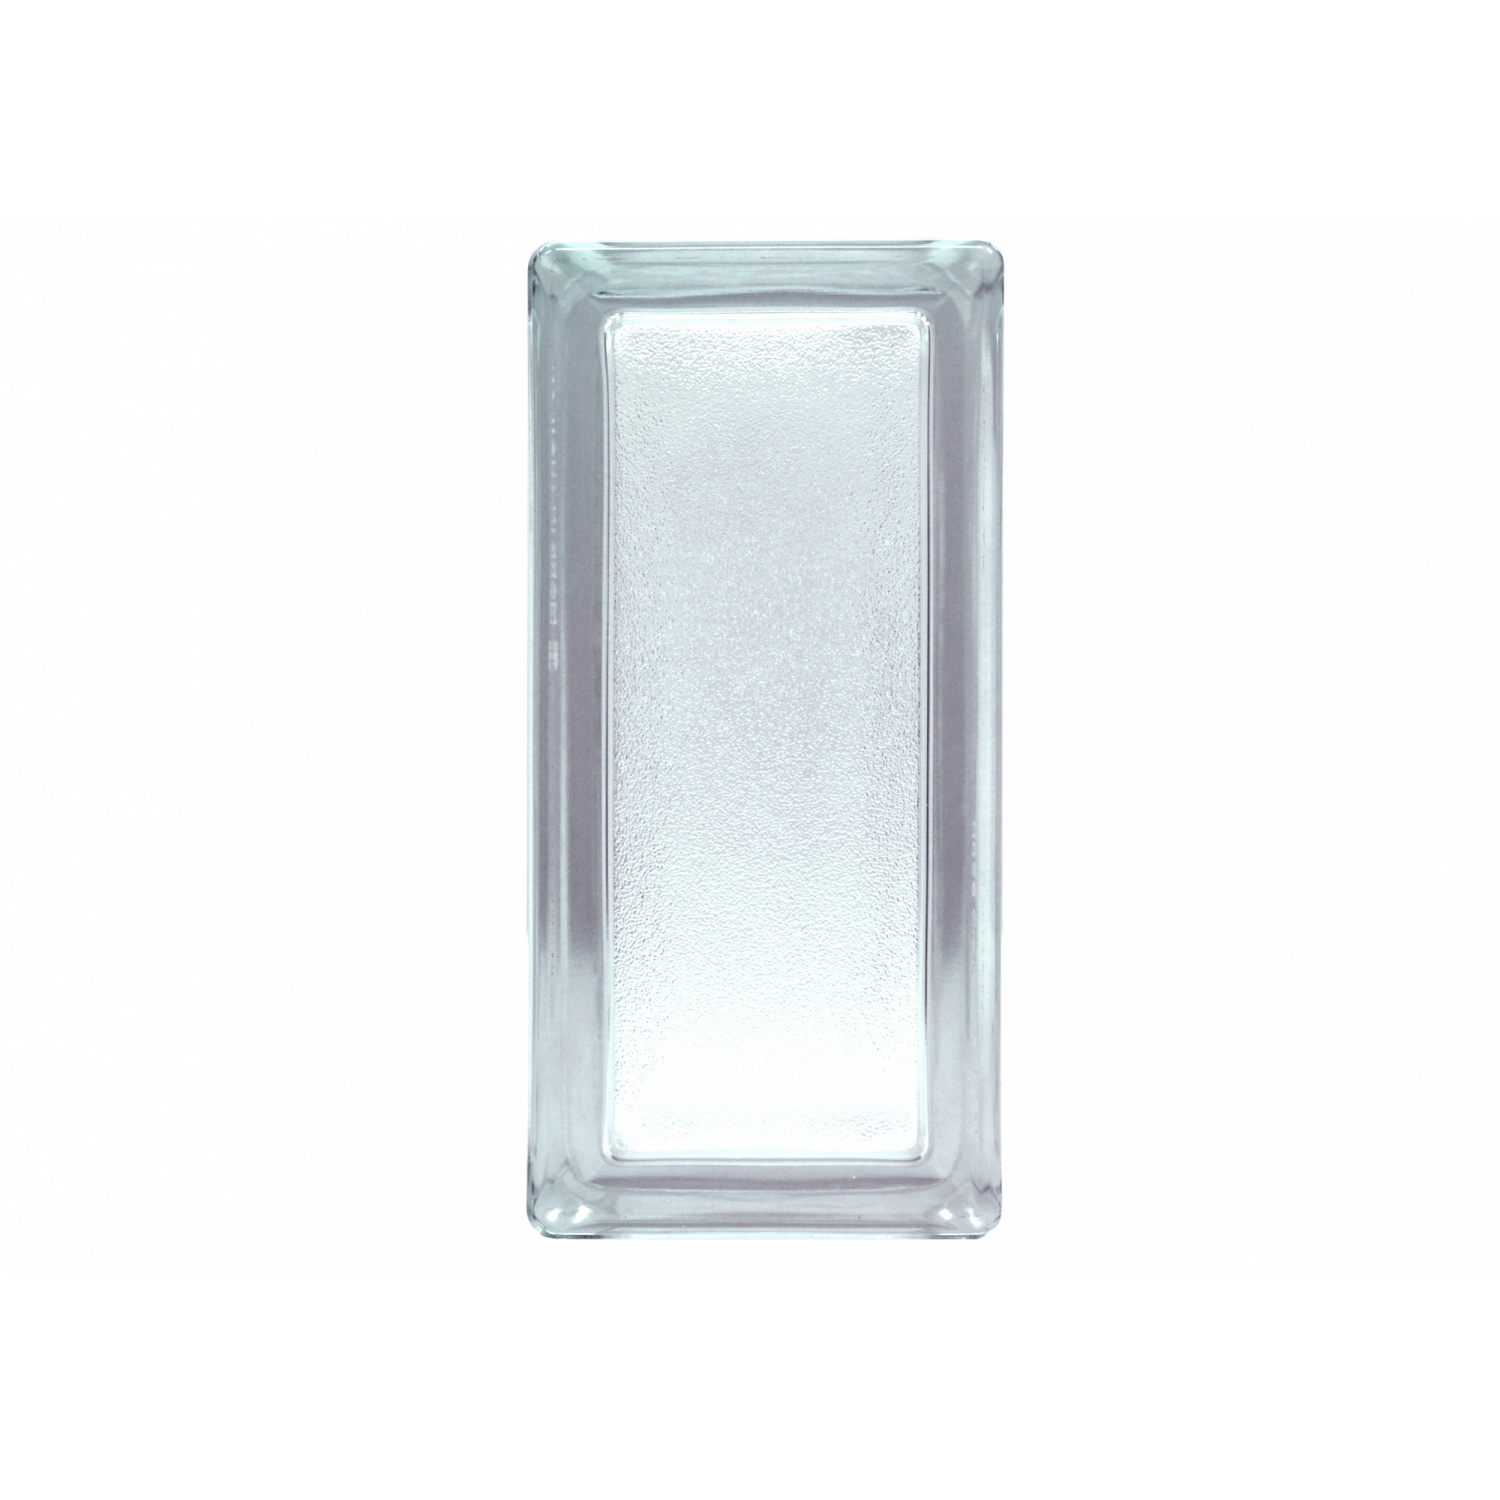 ช้างแก้ว บล็อกแก้วใส แก้วพิรุณ Half N-017/12 190x90x80 มม.